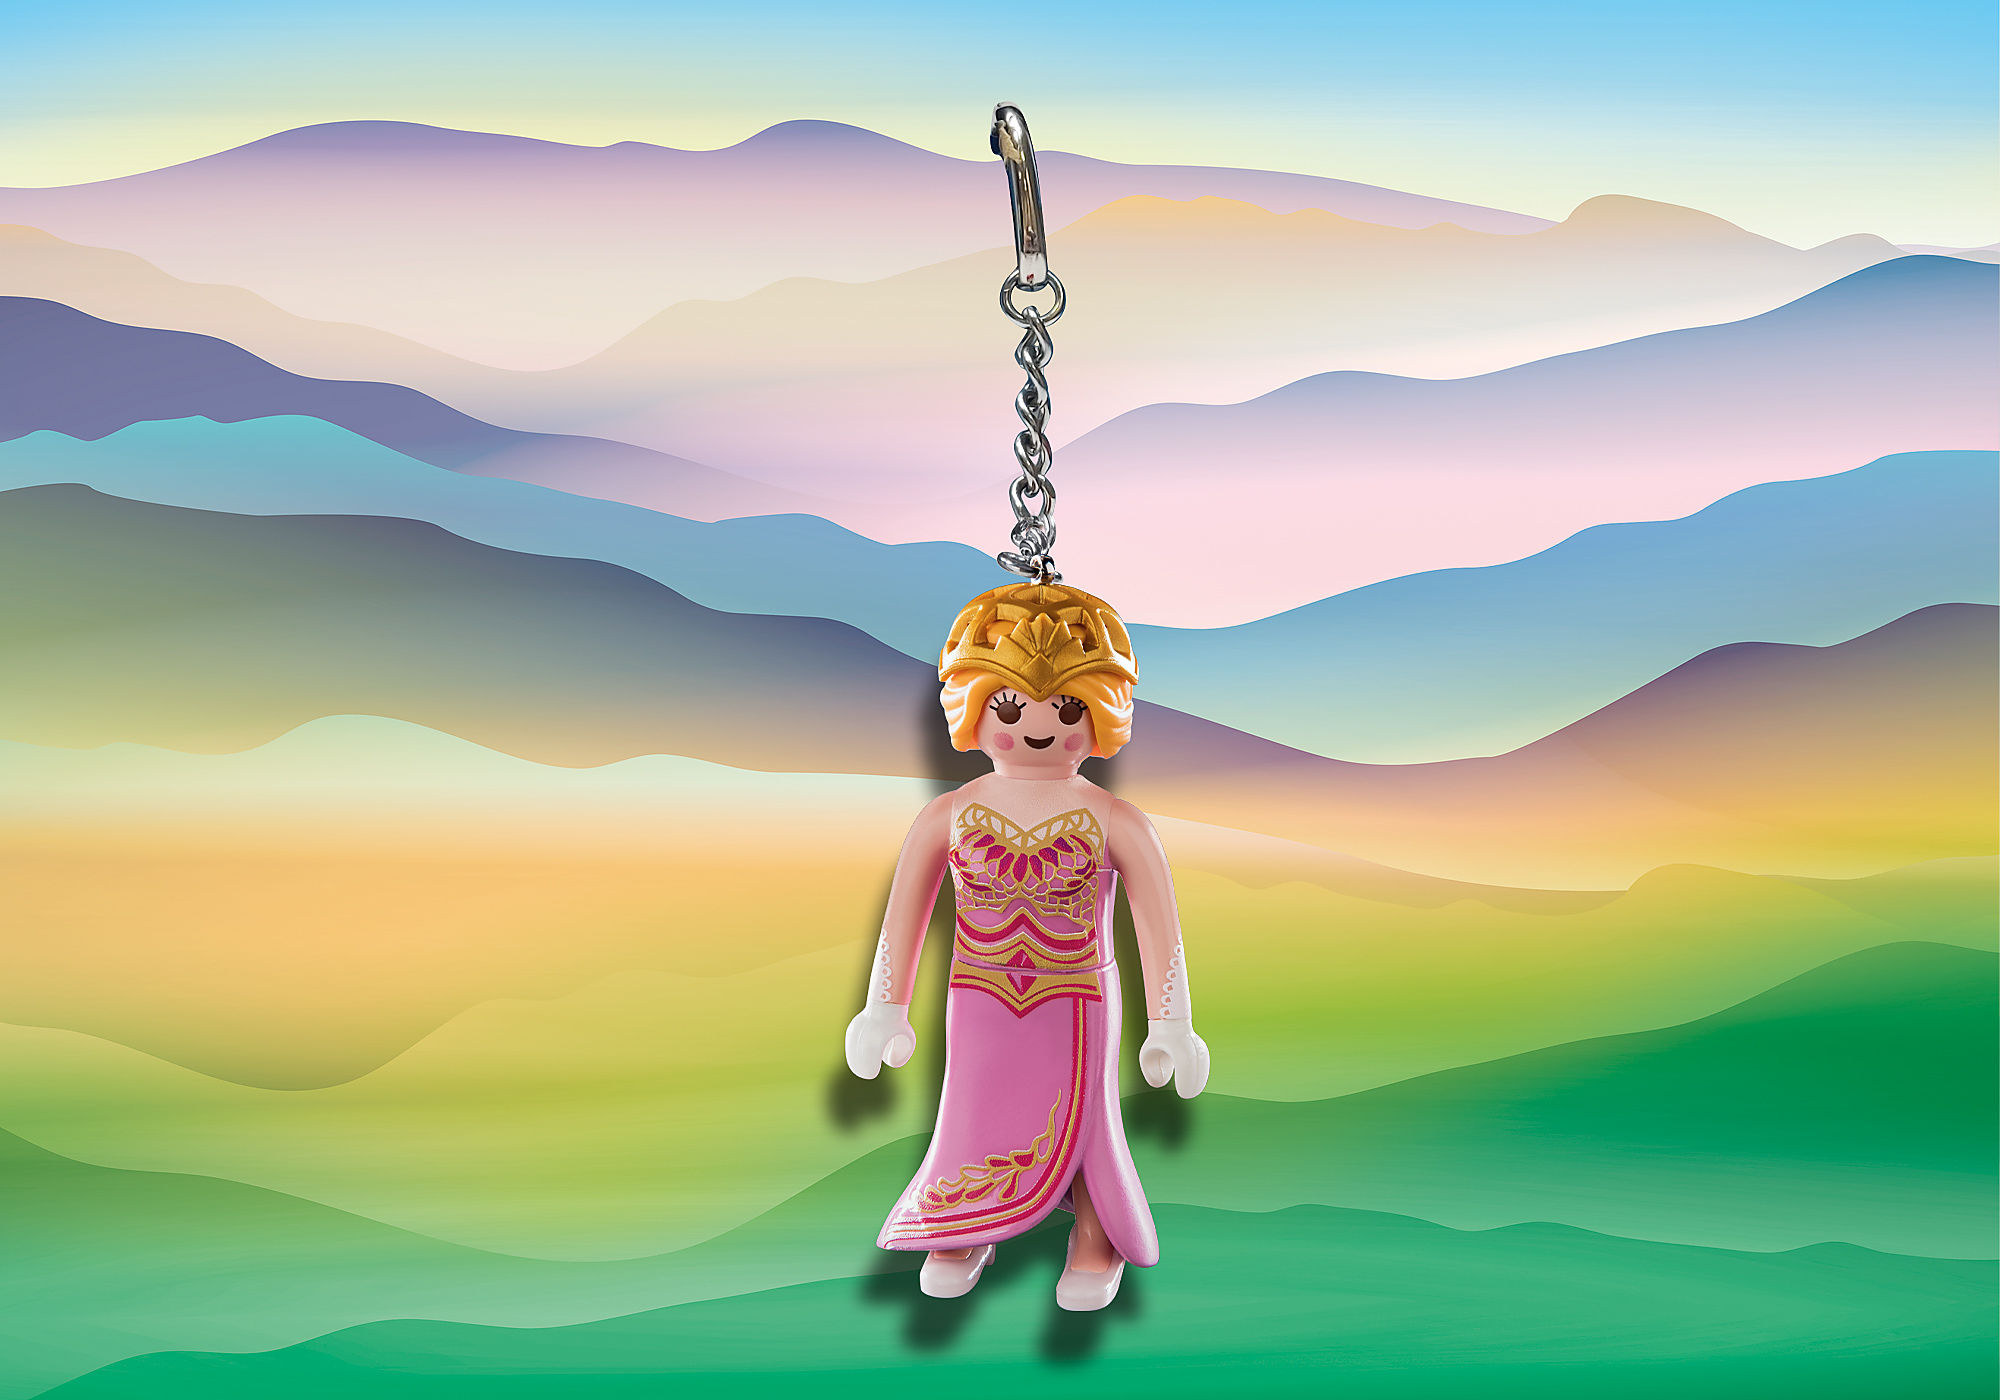 PLAYMOBIL Princess Magic 71348 Calendrier de l'Avent - Arc-en-ciel